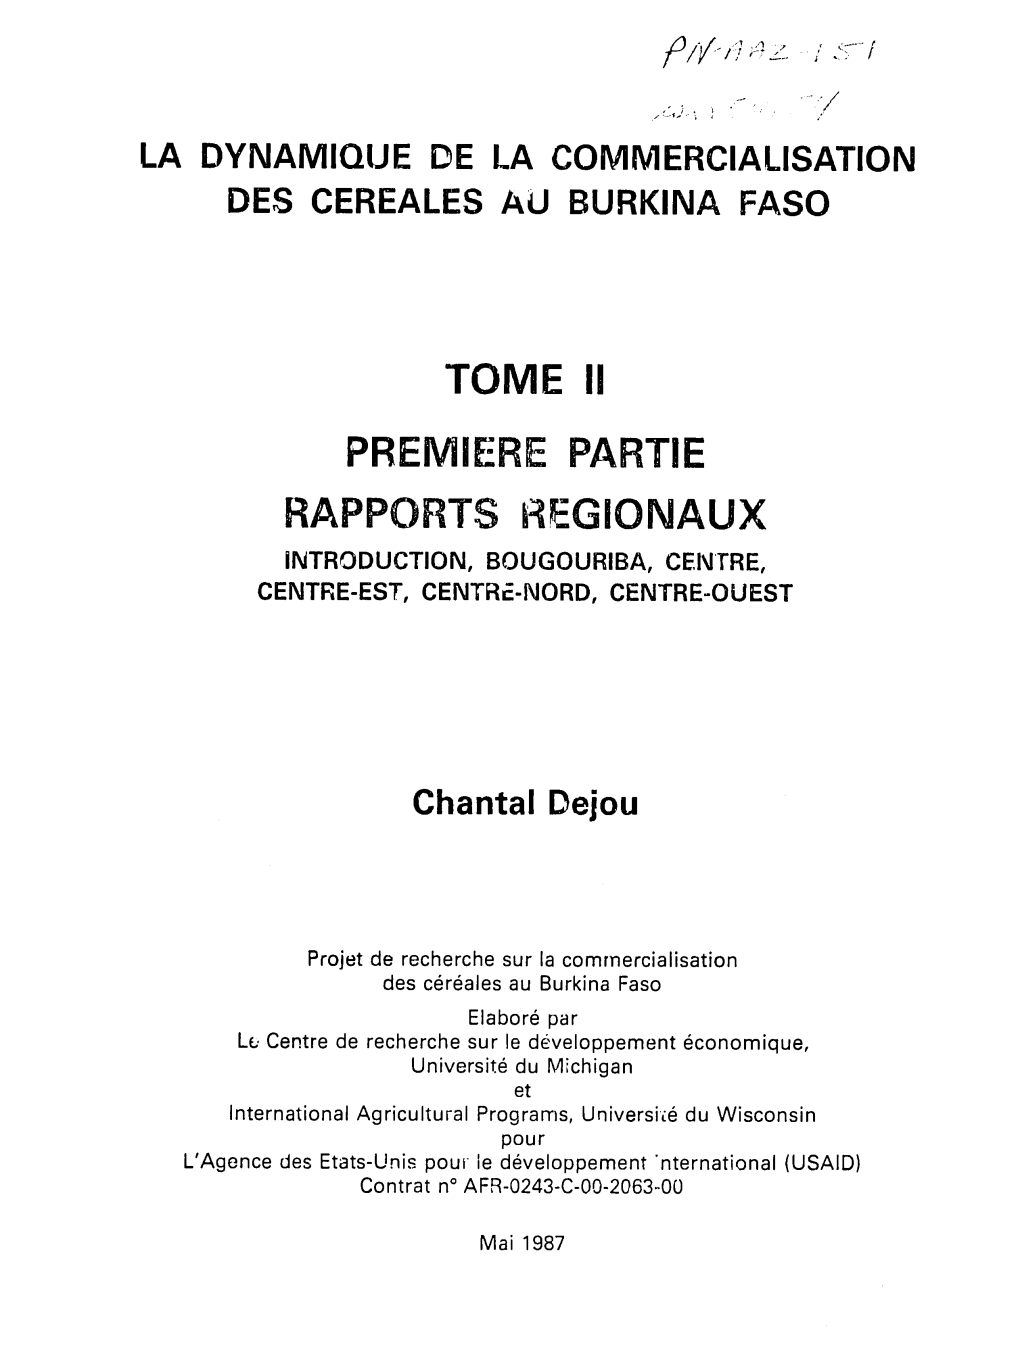 Tome Ii Premiere Partie Rapports Riegionaux Introduction, Bougouriba, Centre, Centre-Est, Centre-Nord, Centre-Ouest